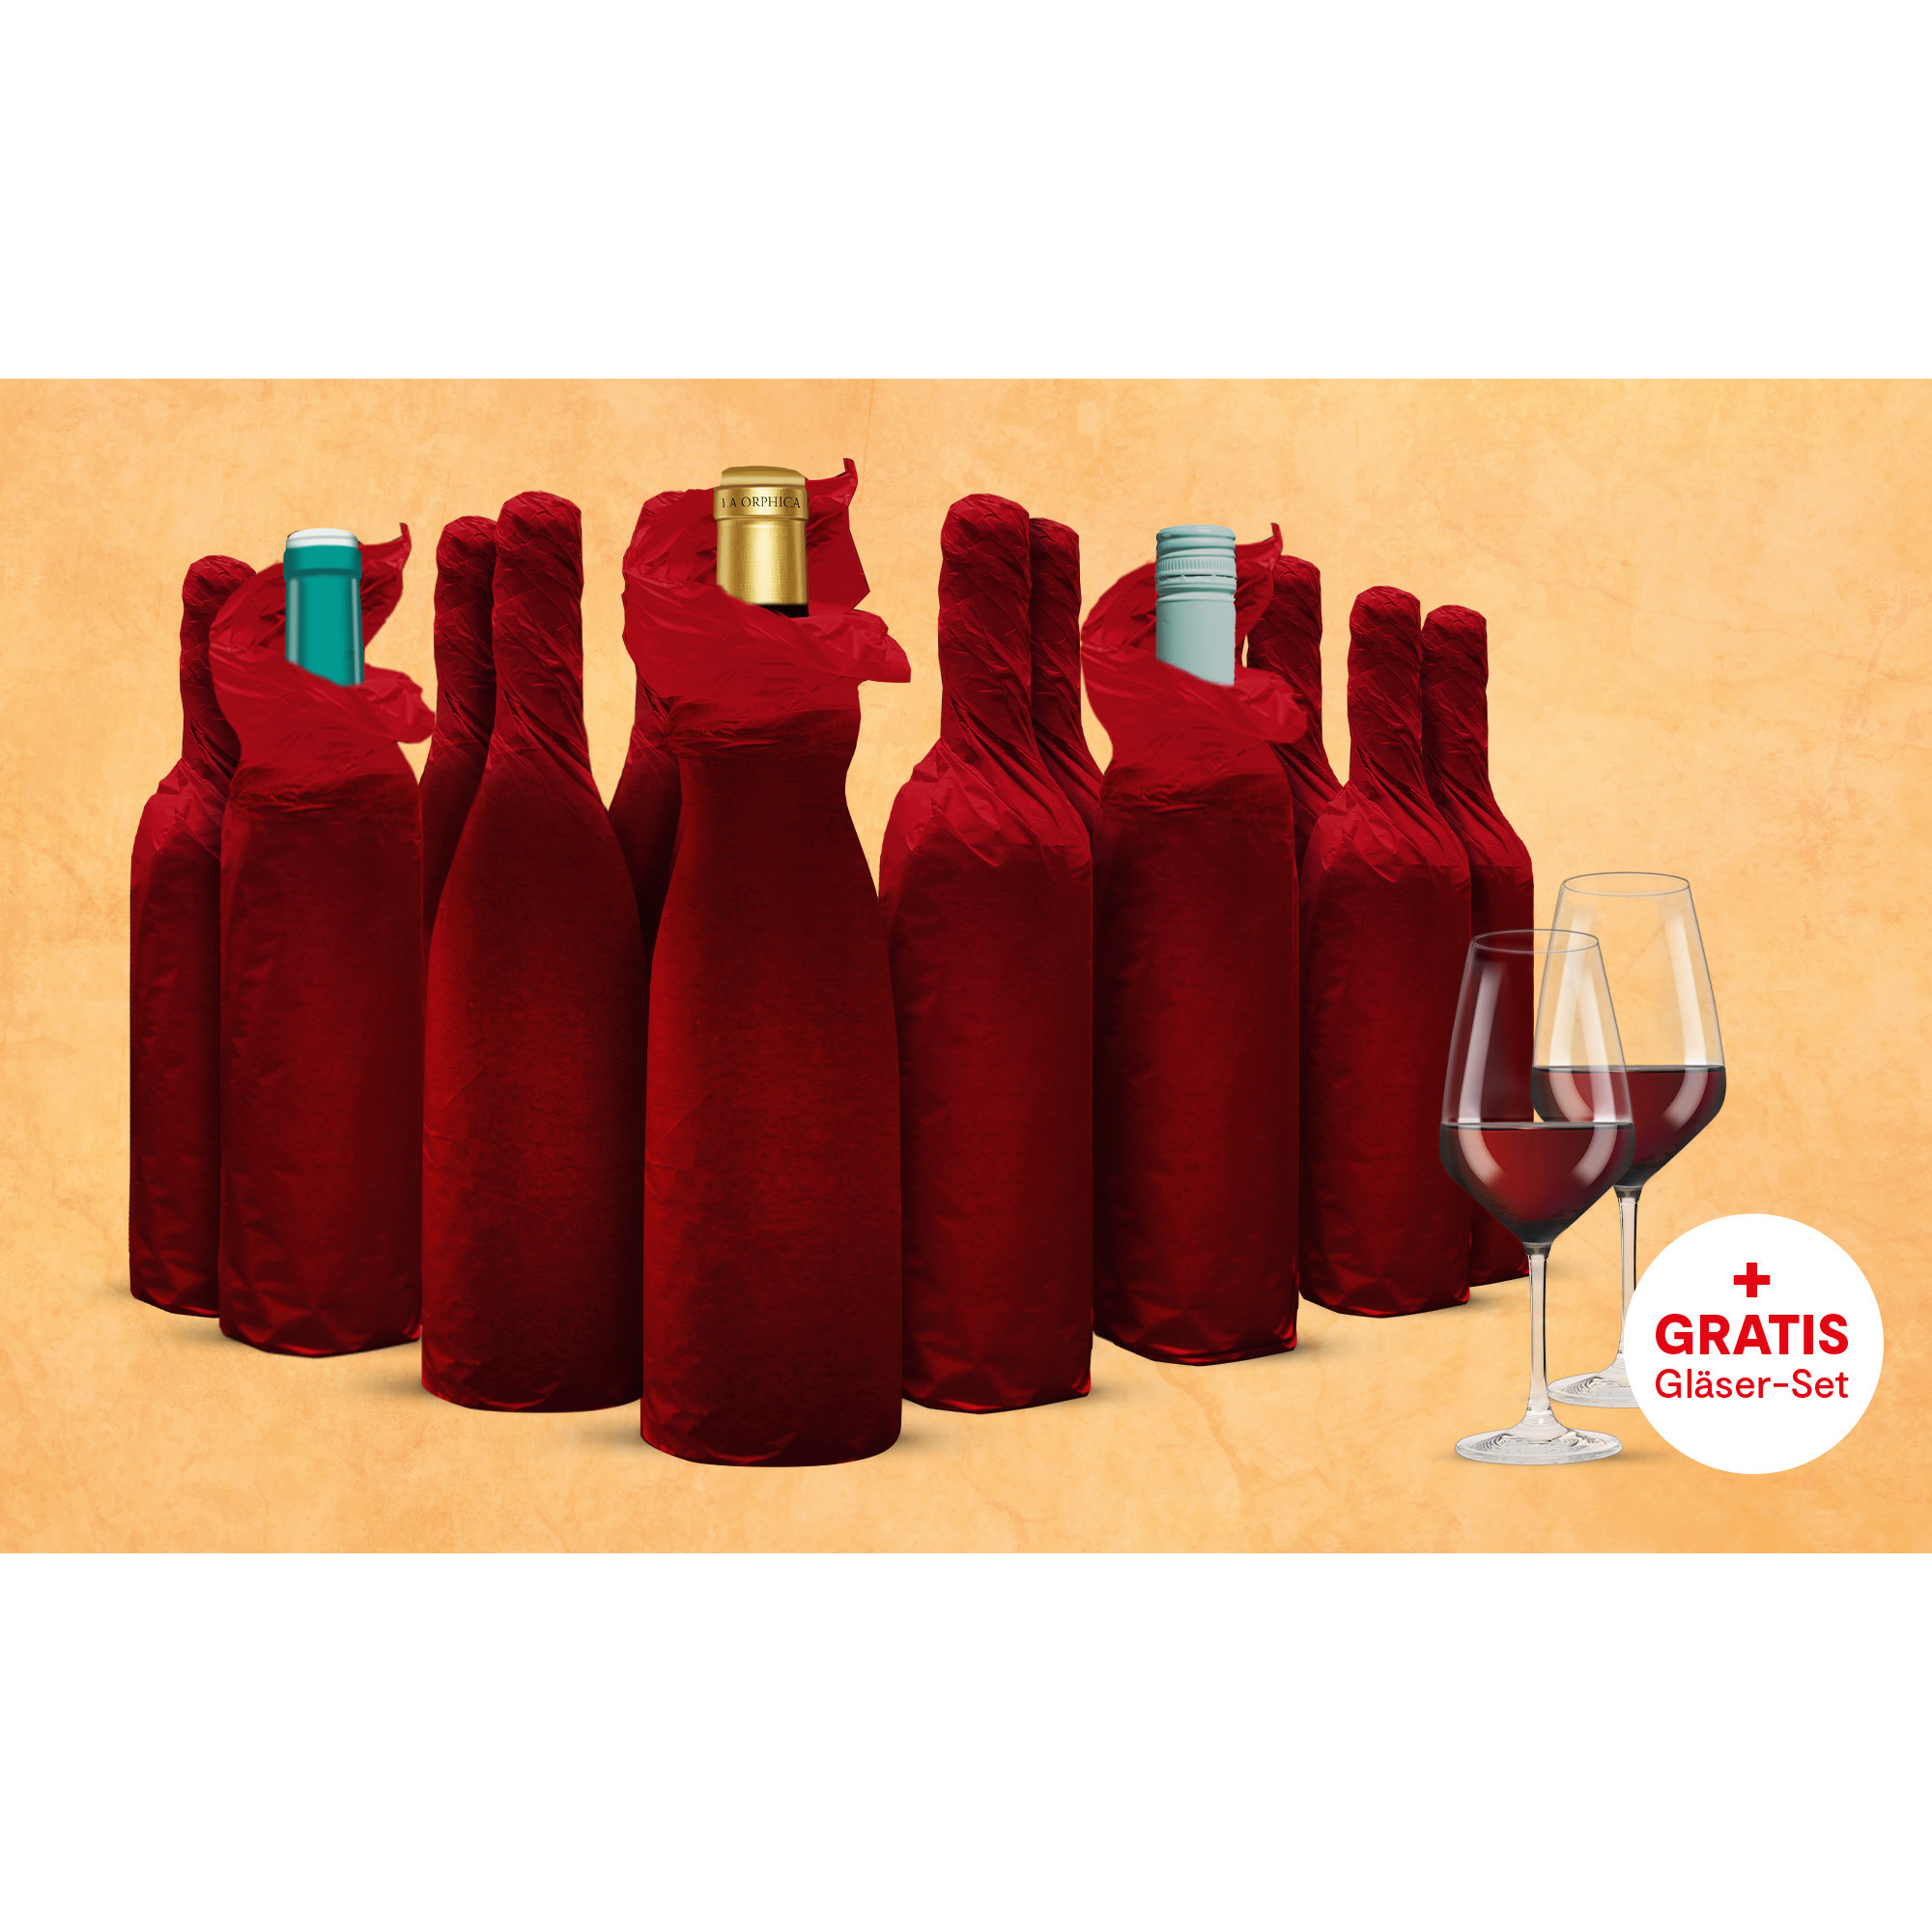 Vinos Weinprobe Paket  9L Weinpaket aus Spanien 38350 vinos DE